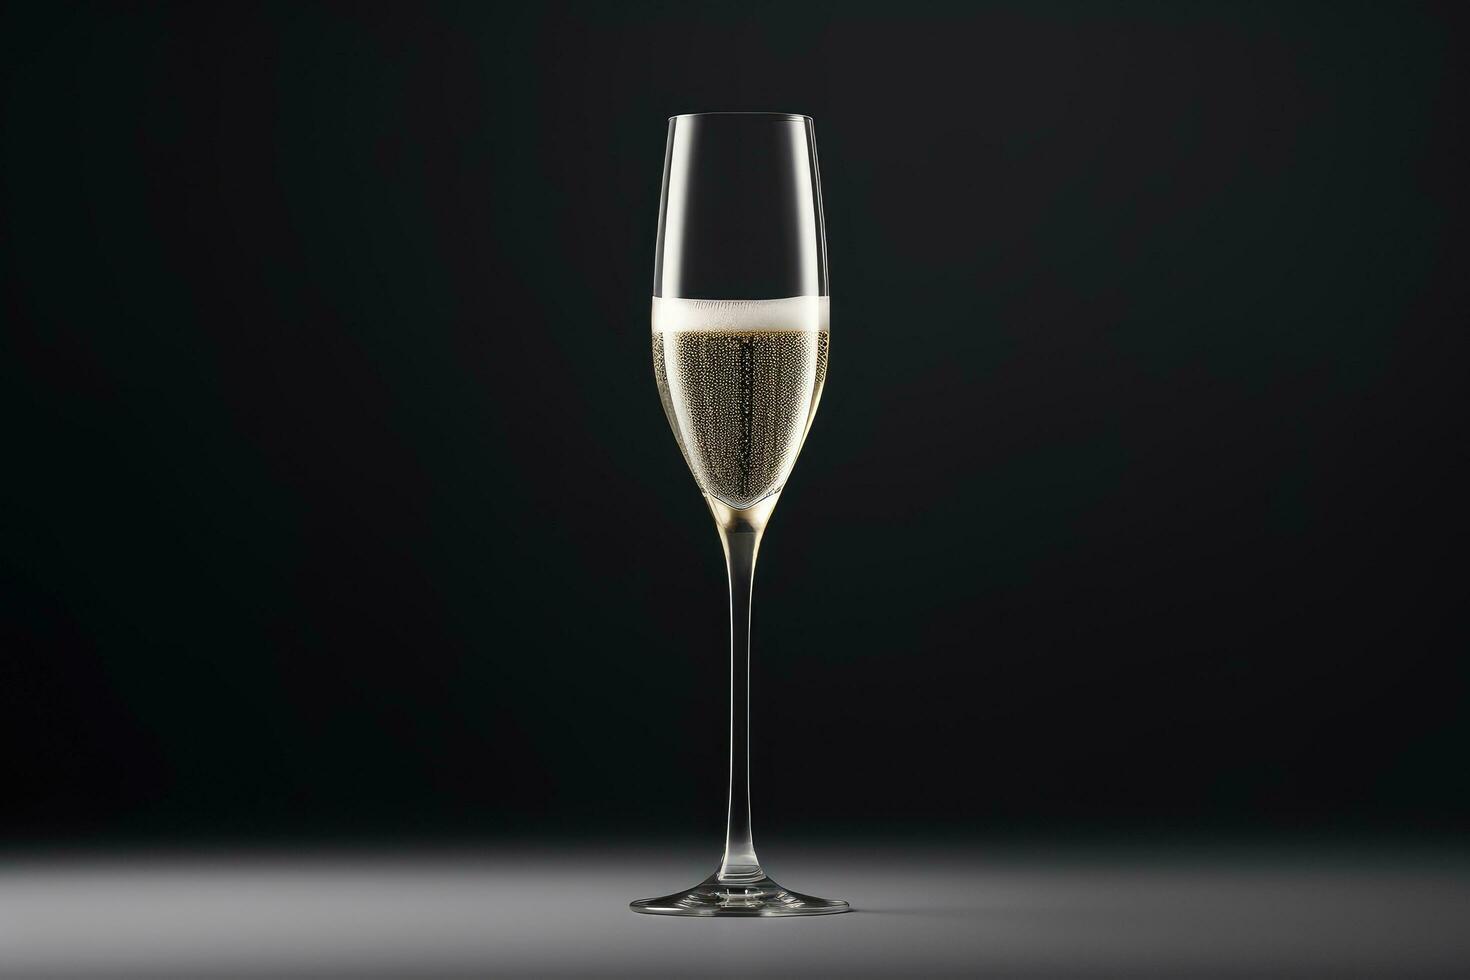 champanhe vidro modelo brincar, alcoólico bebida em Preto fundo. adequado para festivo desenhos e vinho listas, restaurante menus. foto